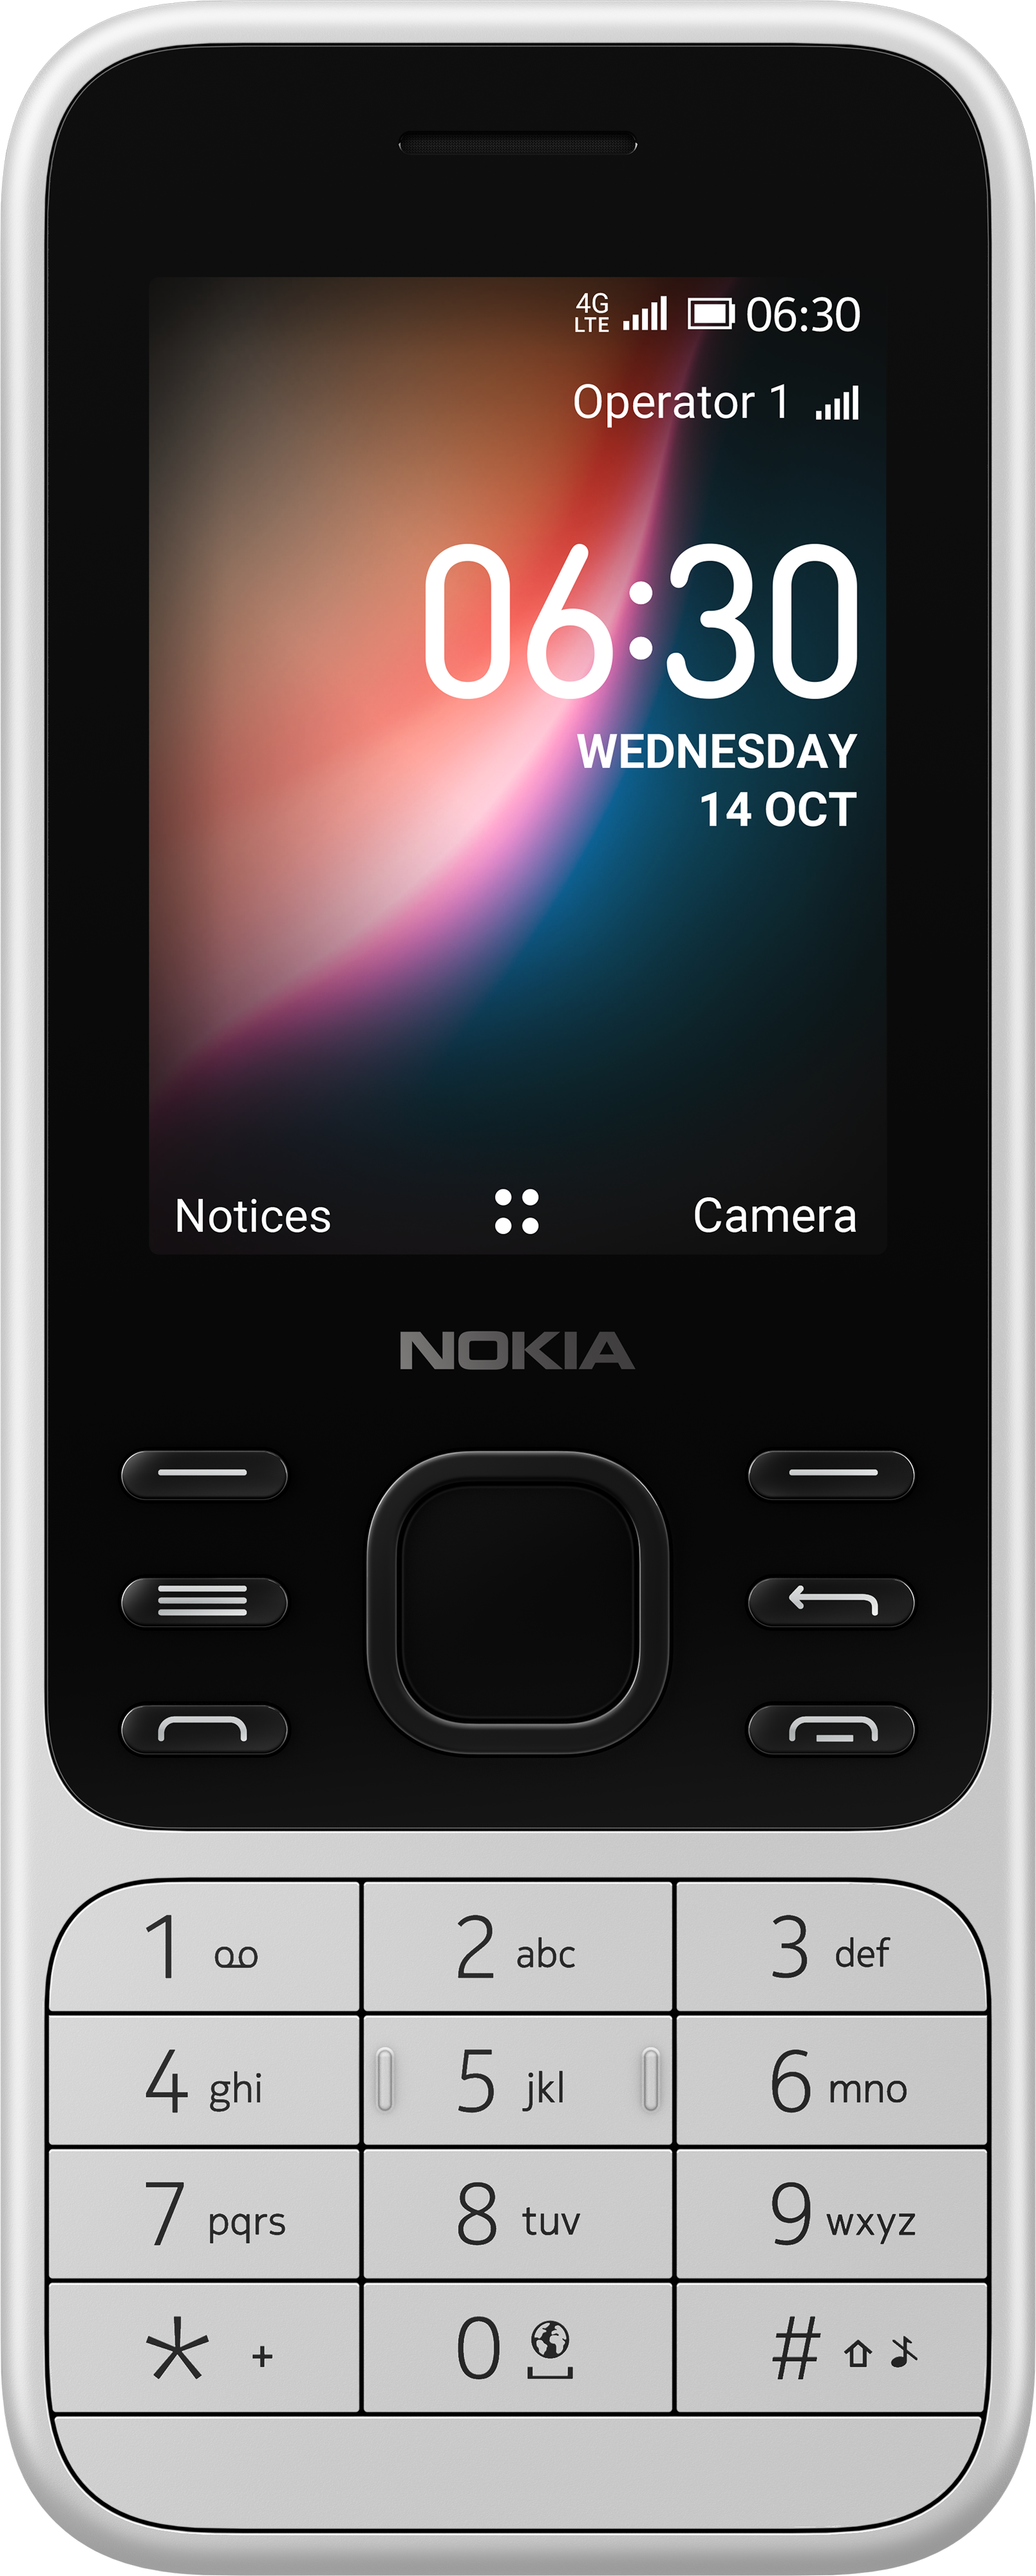 Nokia điện thoại & phụ kiện: Chi tiết nhỏ đến từng phụ kiện trên điện thoại Nokia đều được chăm chút kỹ lưỡng, giúp bạn tạo nên phong cách riêng và độc đáo. Hãy khám phá ngay để trang bị cho mình những phụ kiện hoàn hảo nhất nhé!